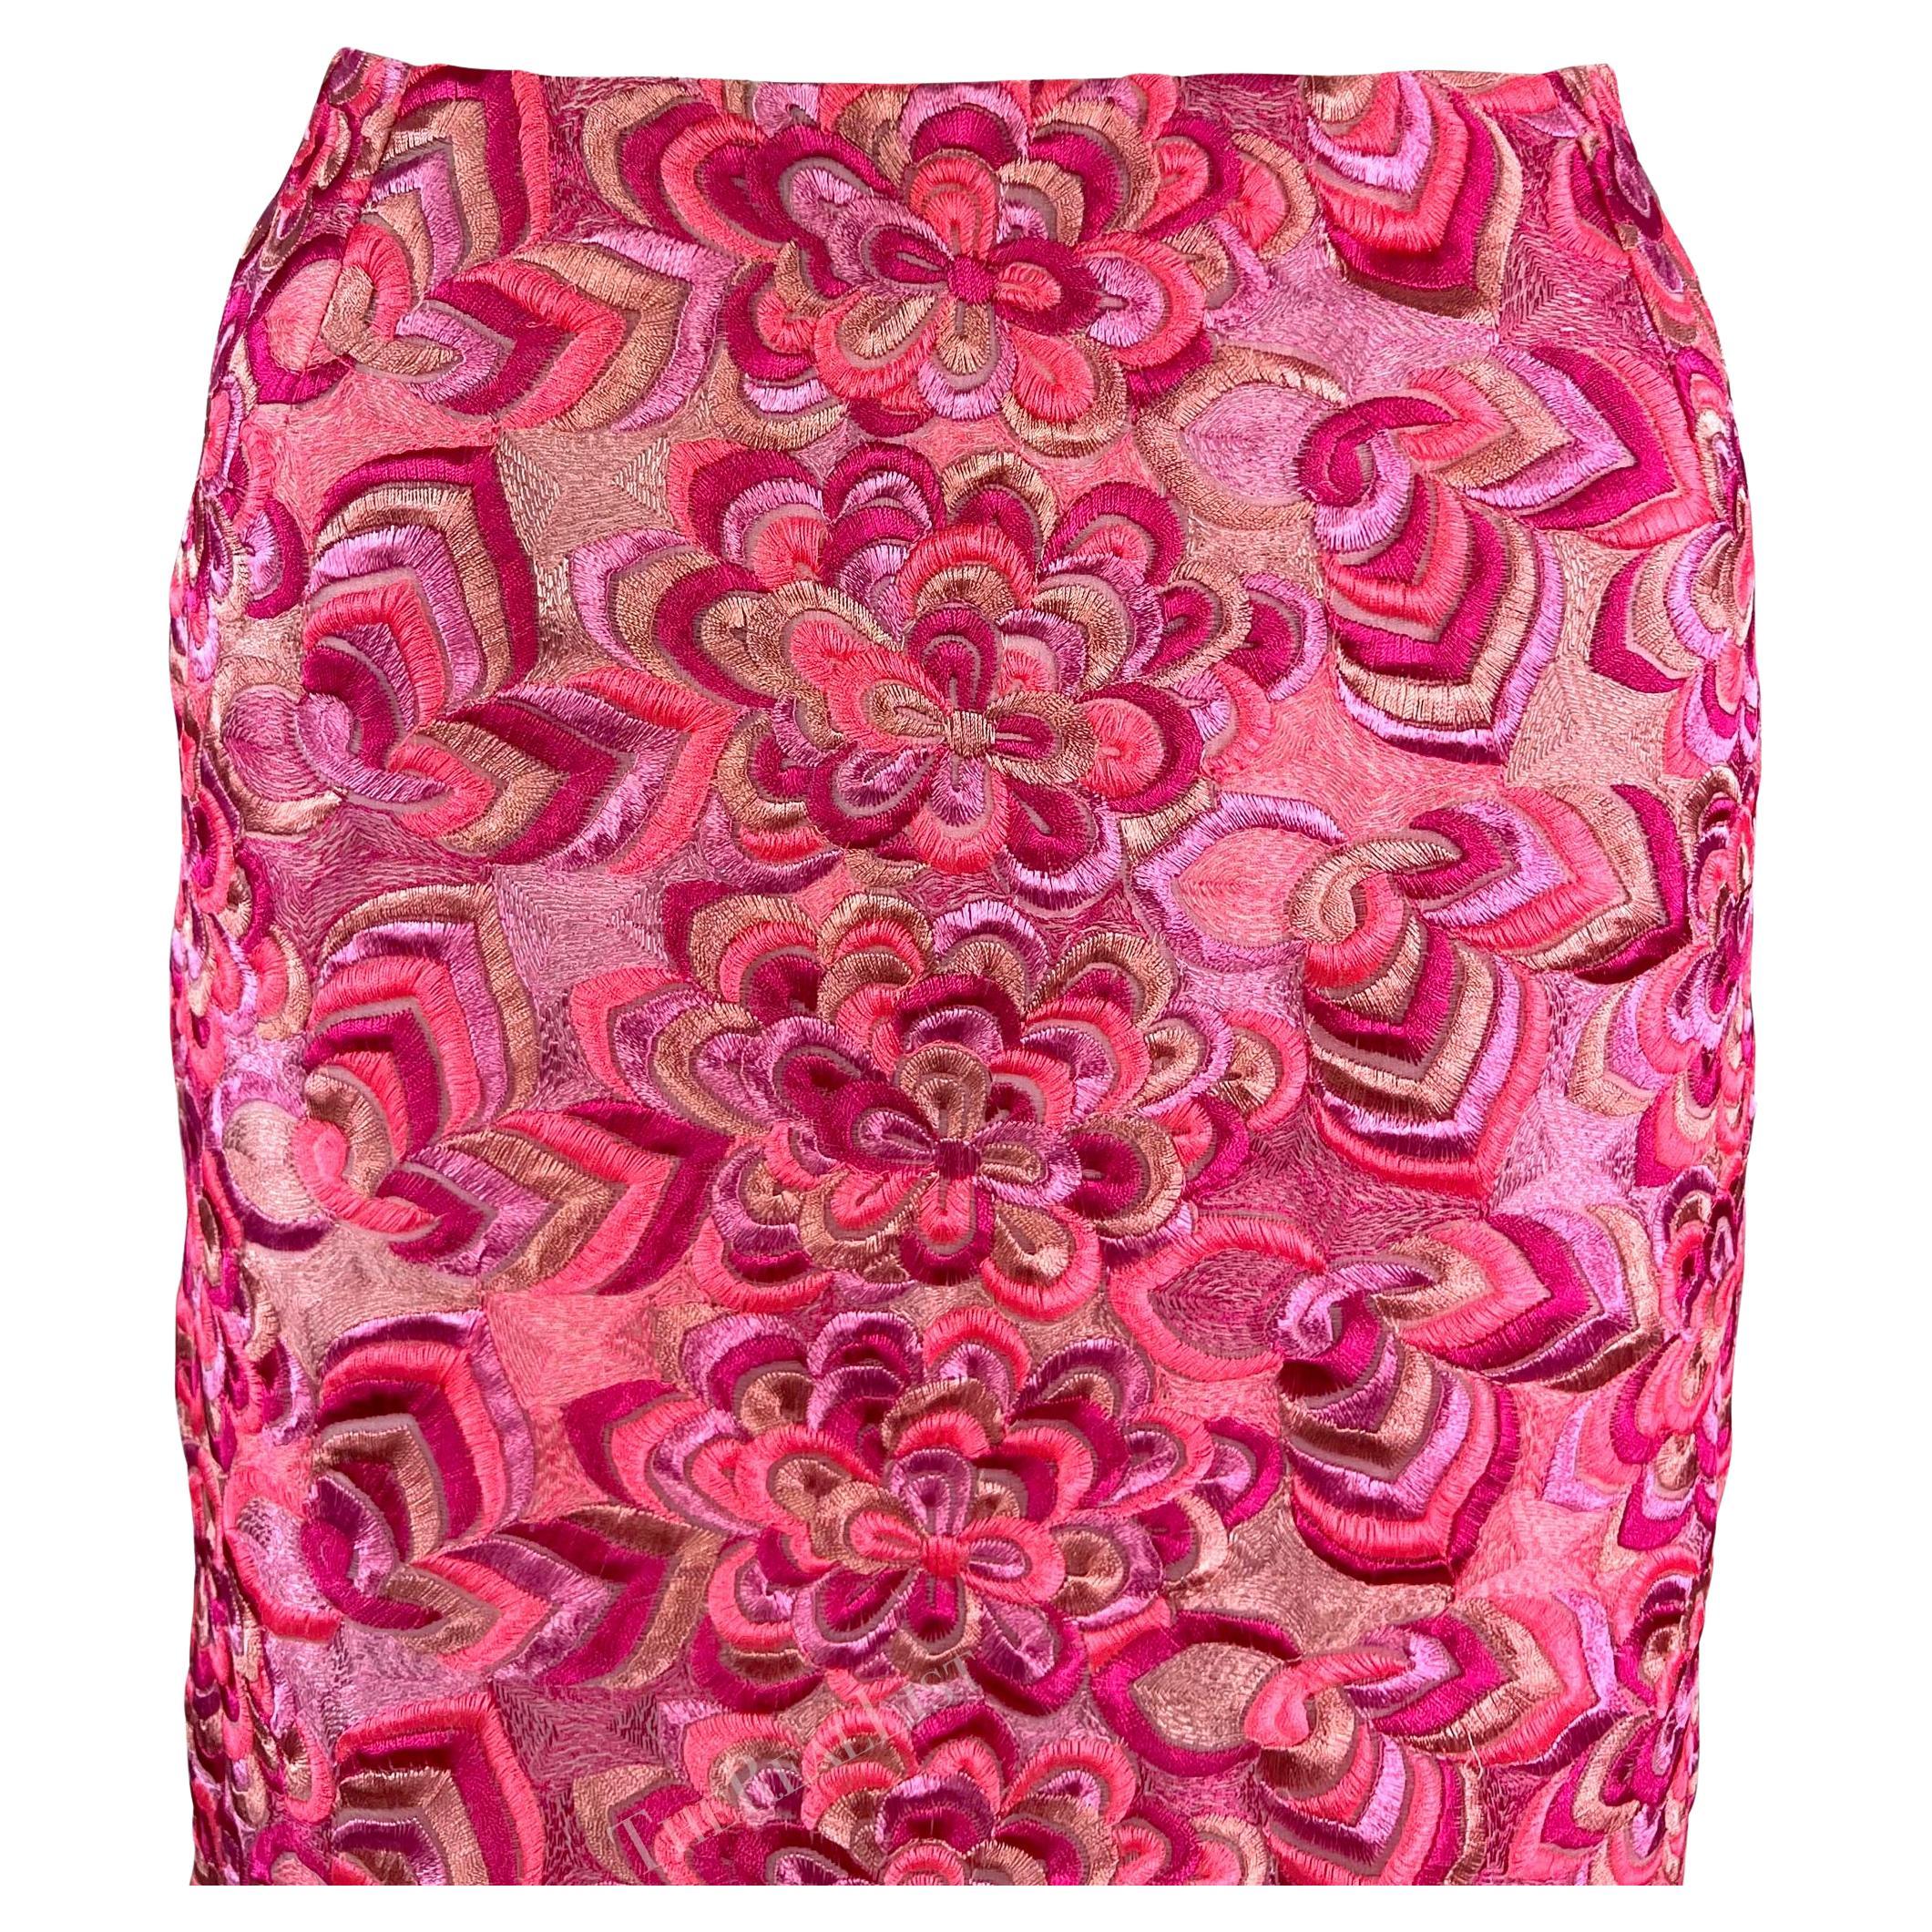 Wir präsentieren einen pinkfarbenen Versace-Rock, entworfen von Donatella Versace. Dieser Rock aus Donatellas bahnbrechender Frühjahr/Sommer-Kollektion 2000 ist komplett mit einer aufwendigen Blumenstickerei bedeckt. Diese seltene Y2K-Schönheit ist